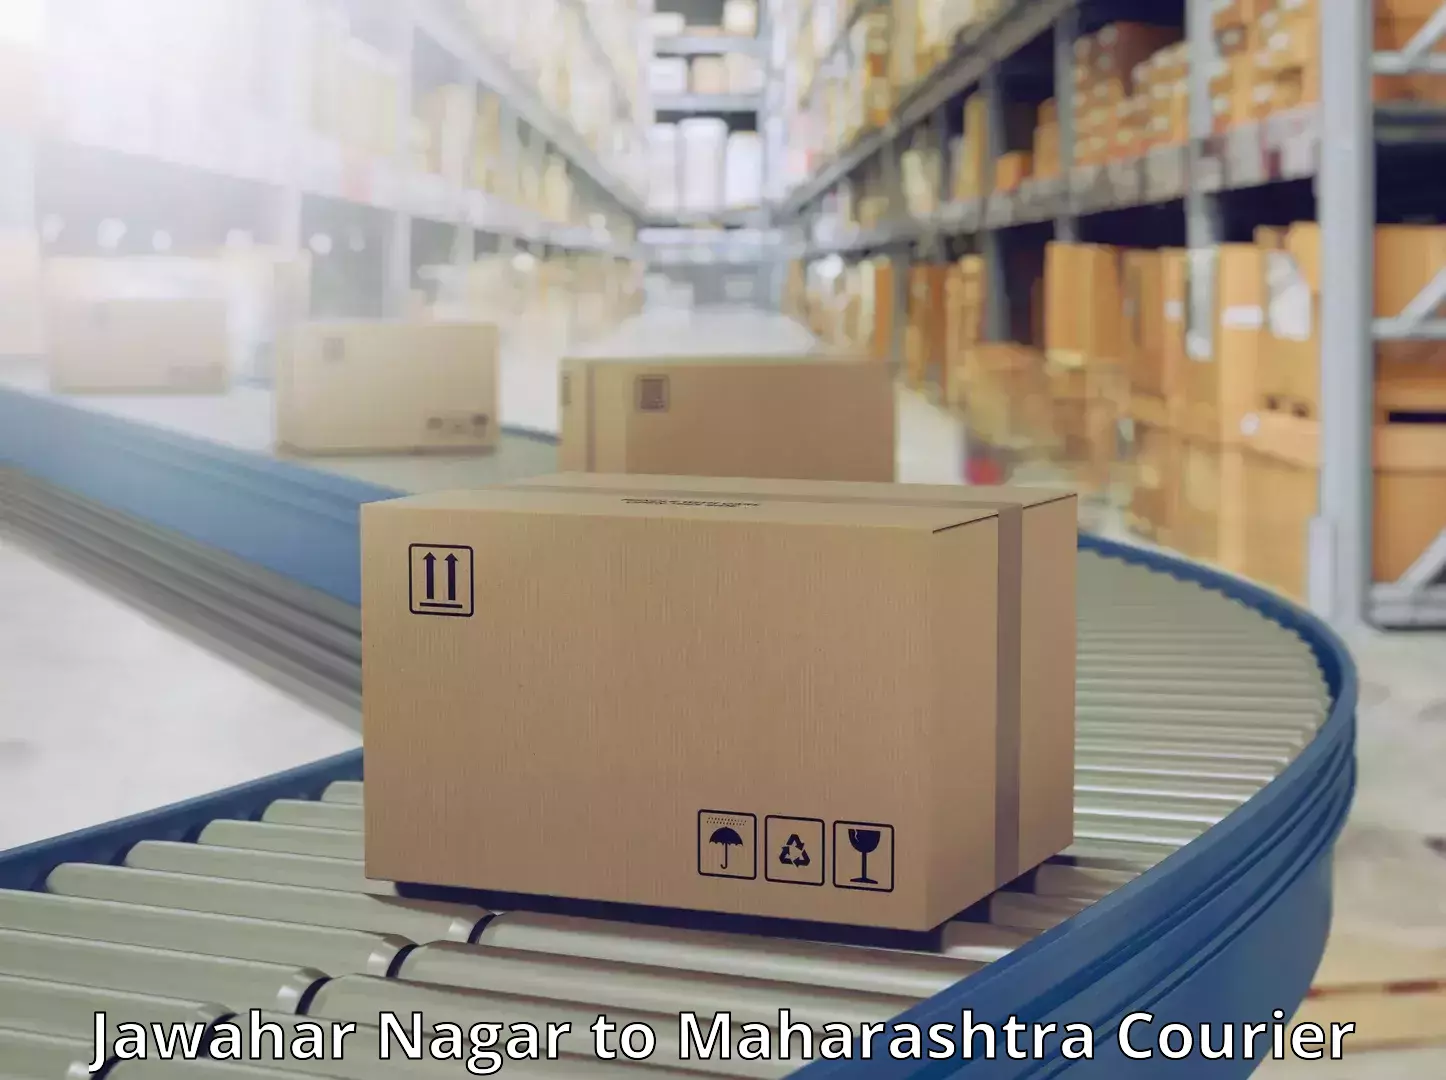 Dynamic courier operations in Jawahar Nagar to Maharashtra